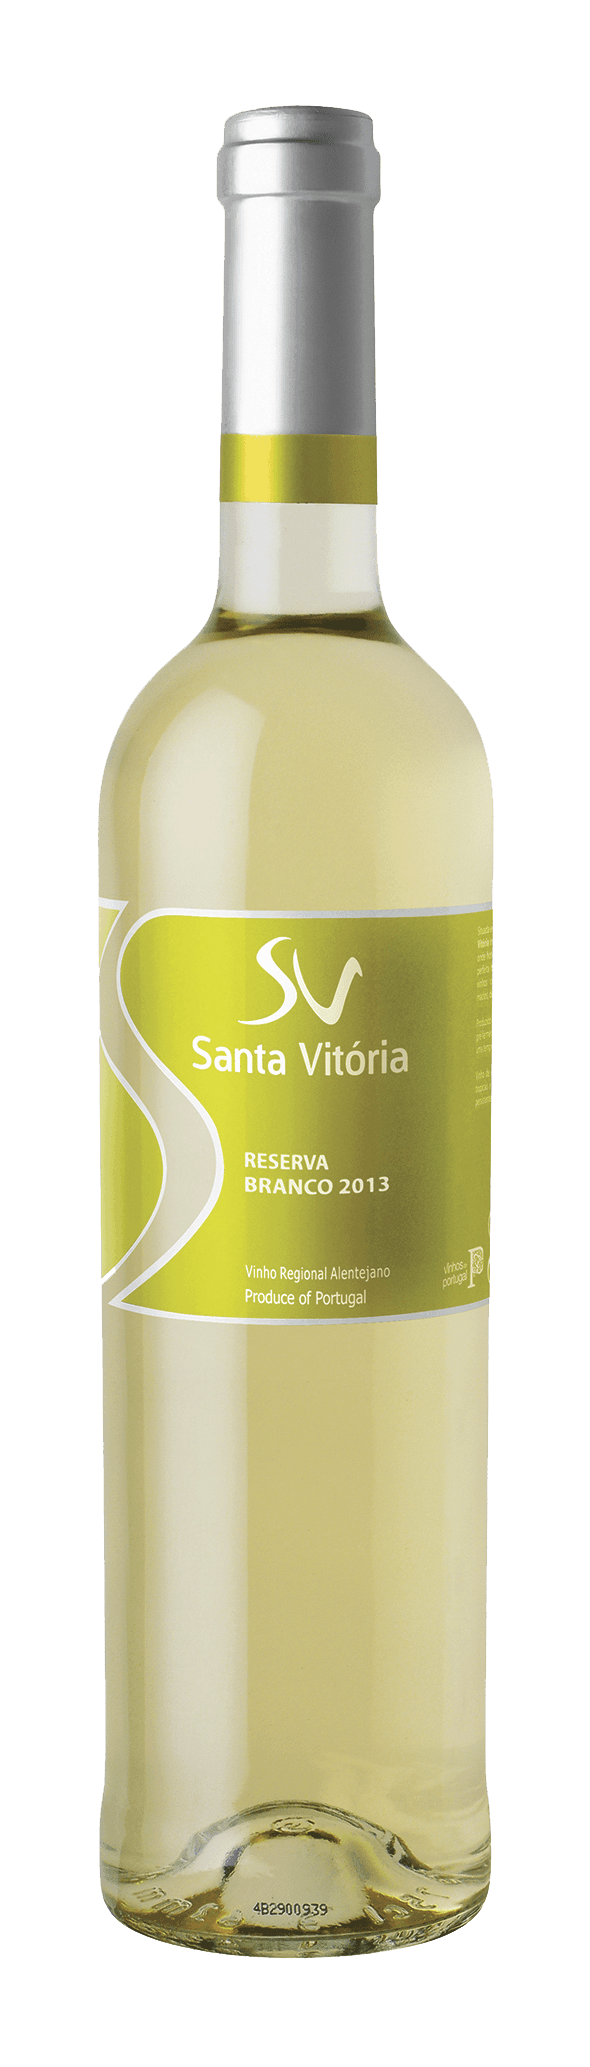 Portugalské víno Santa Vitoria Branco na eshopu vín z Portugalska